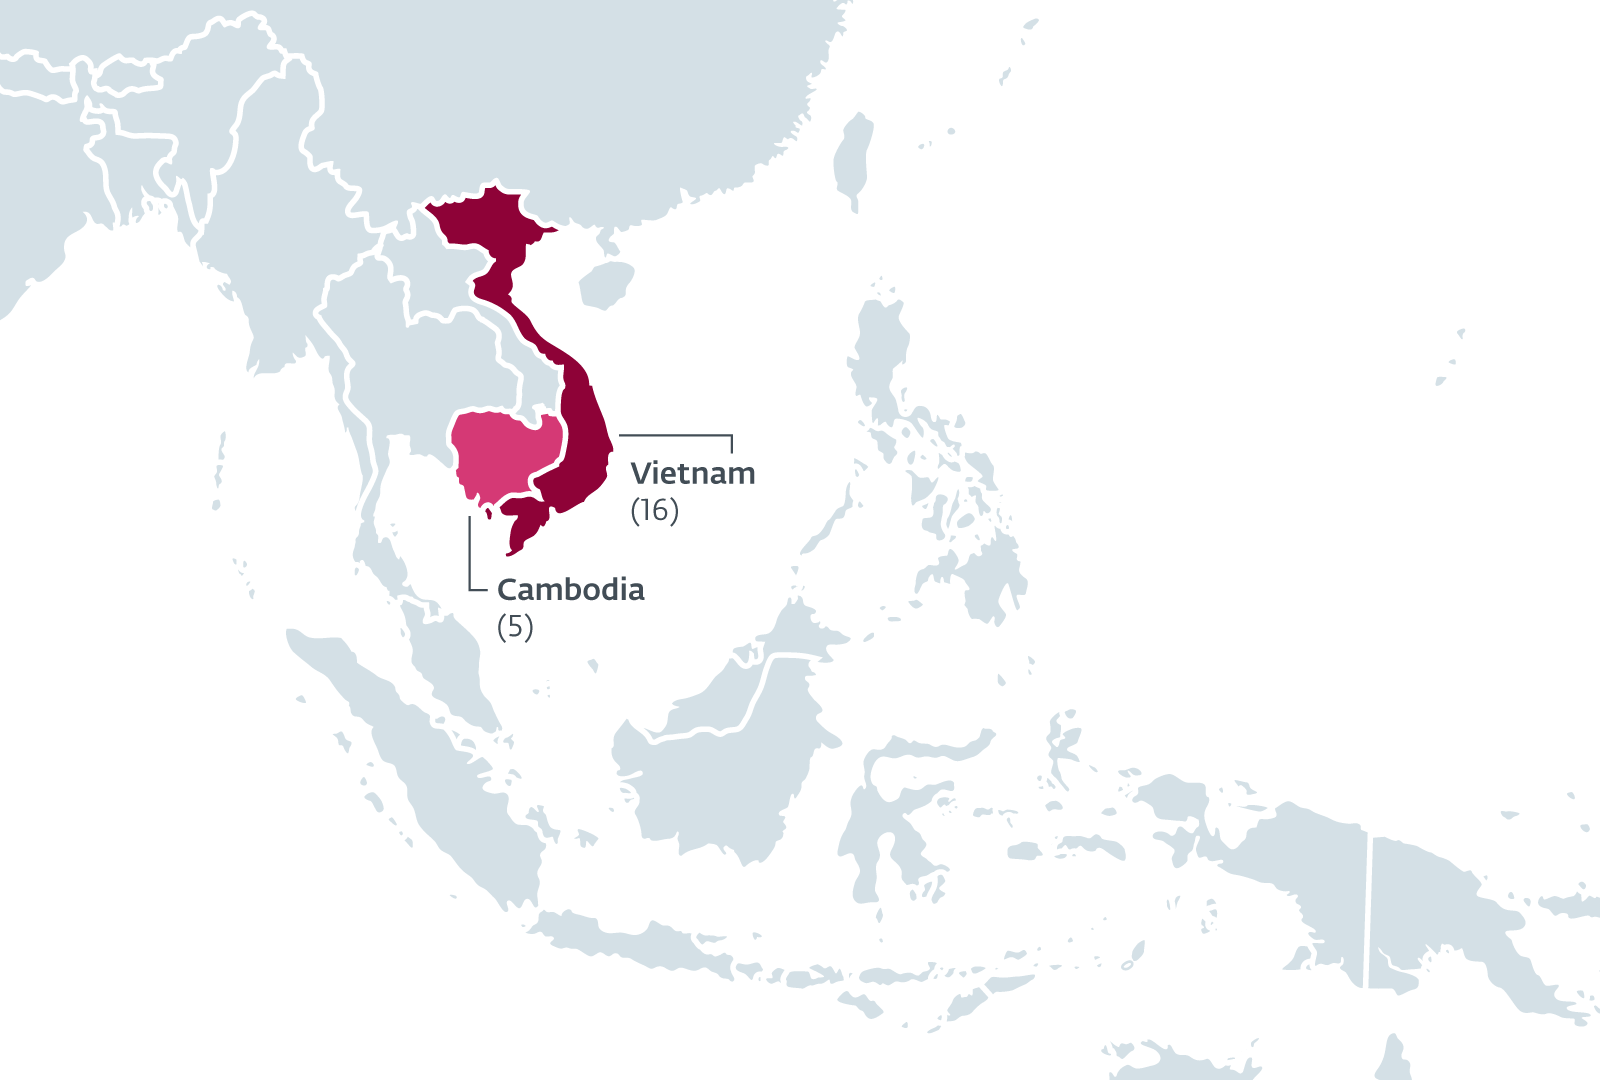 Kambodscha und Vietnam stehen im Fokus der Watering Hole Kampagne